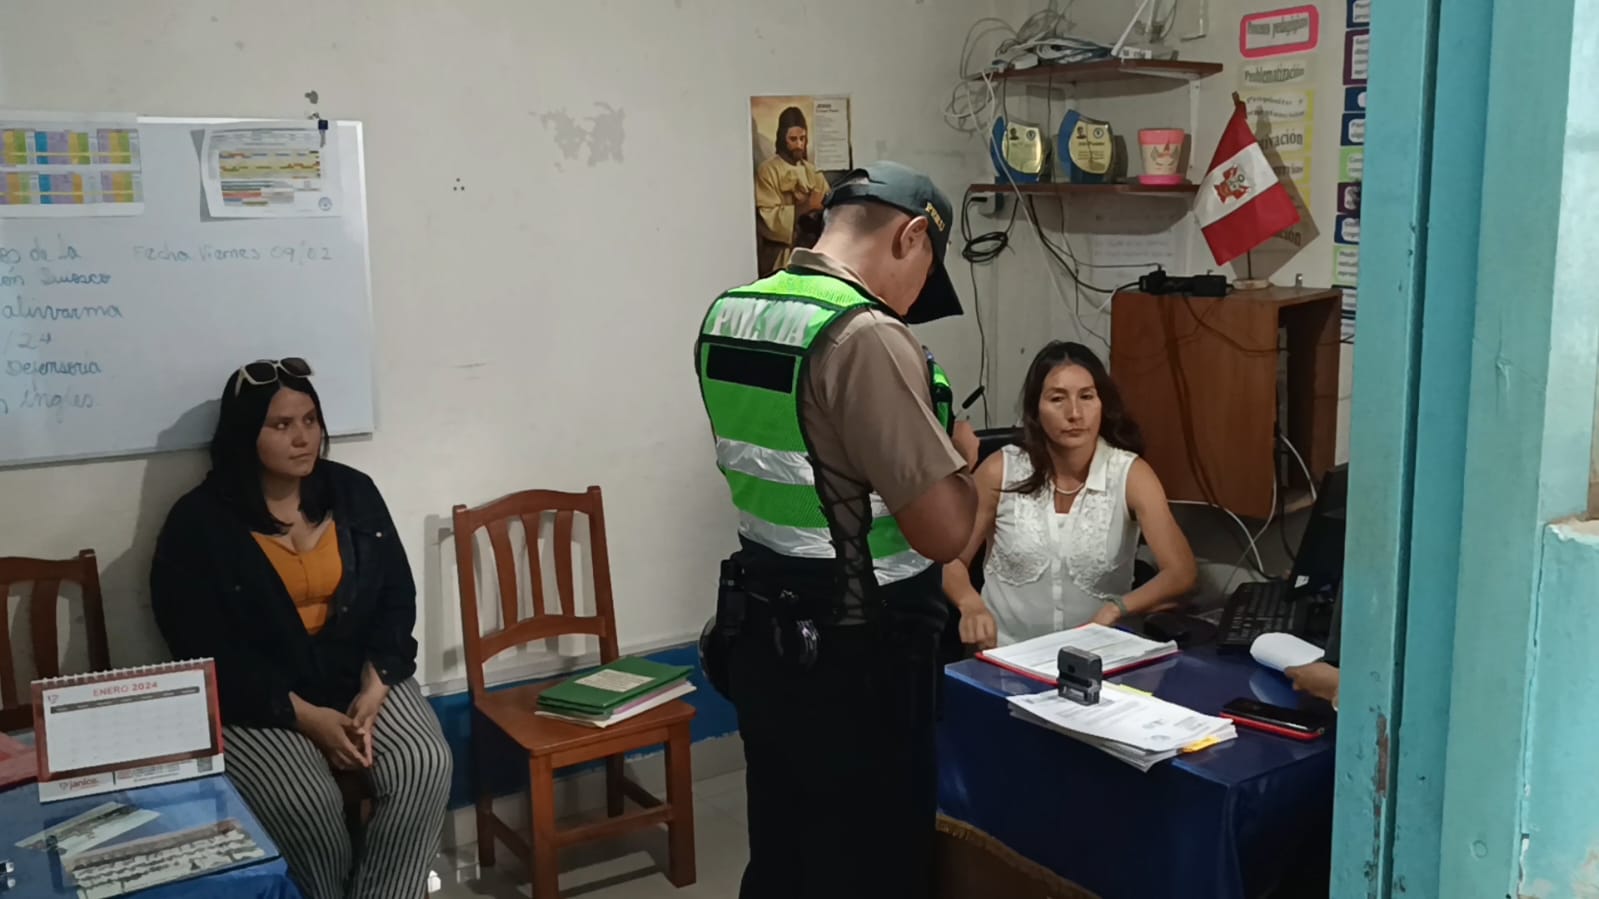 Investigan presunta discriminación en asignación de vacantes en institución educativa de Tarapoto1